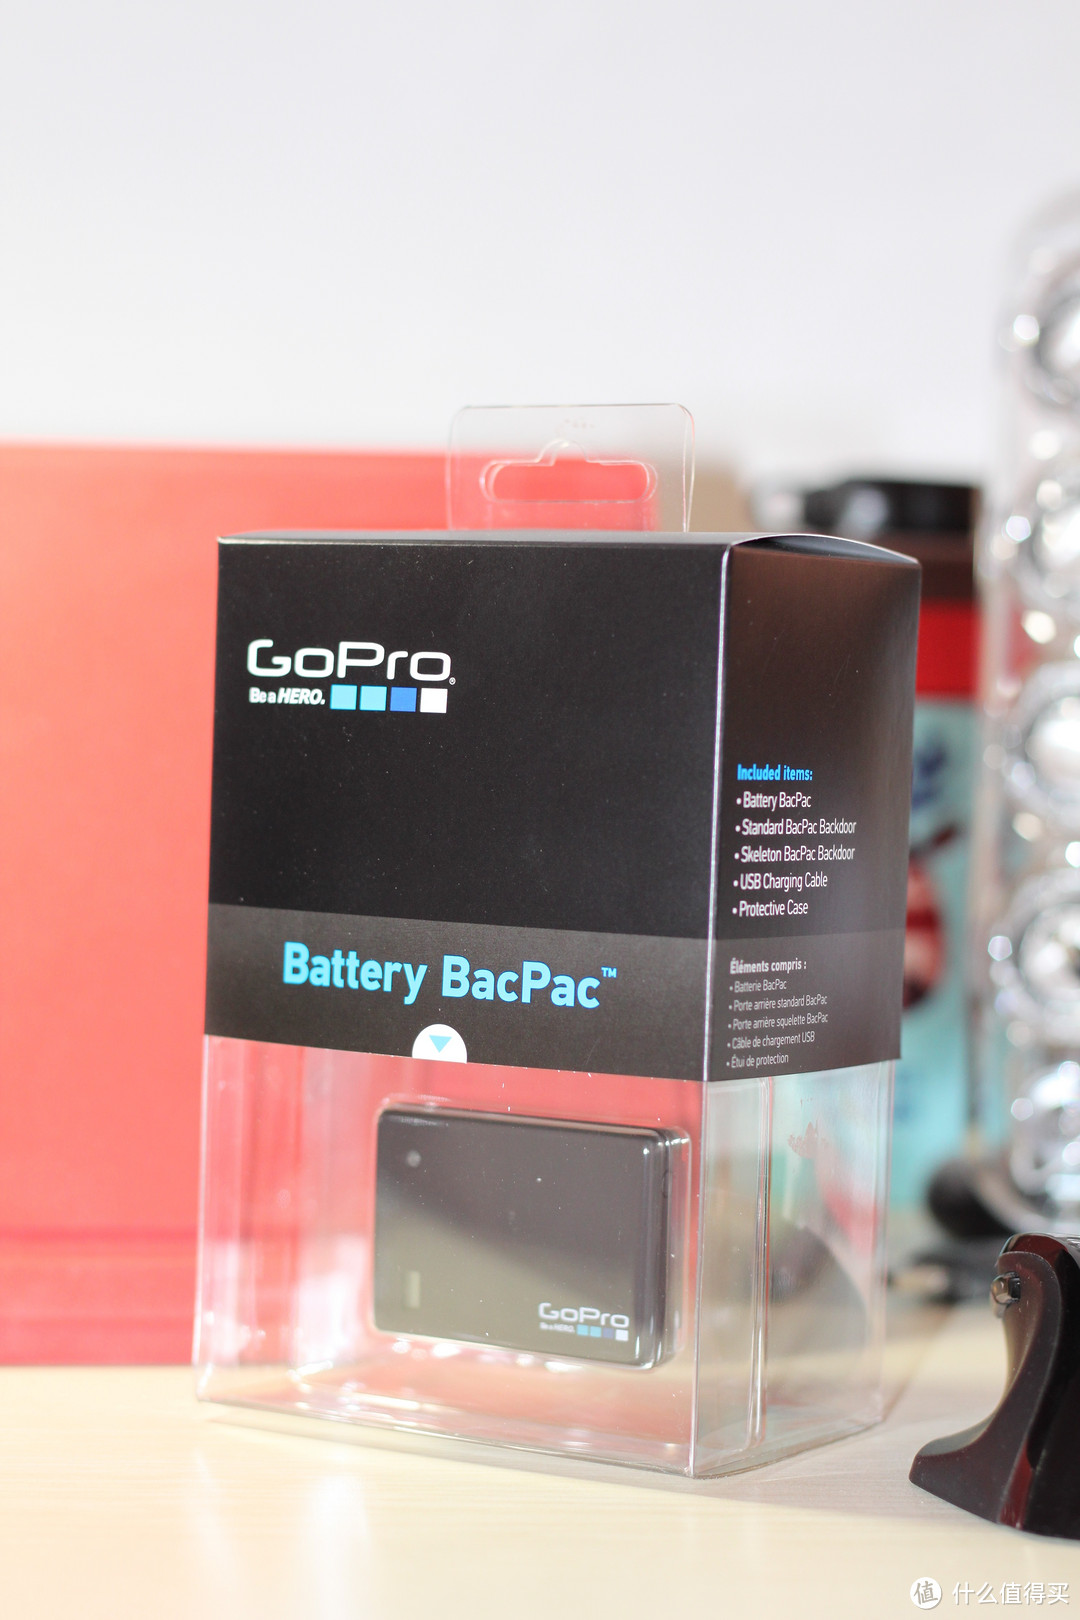 背夹电池包装都是gopro统一风格